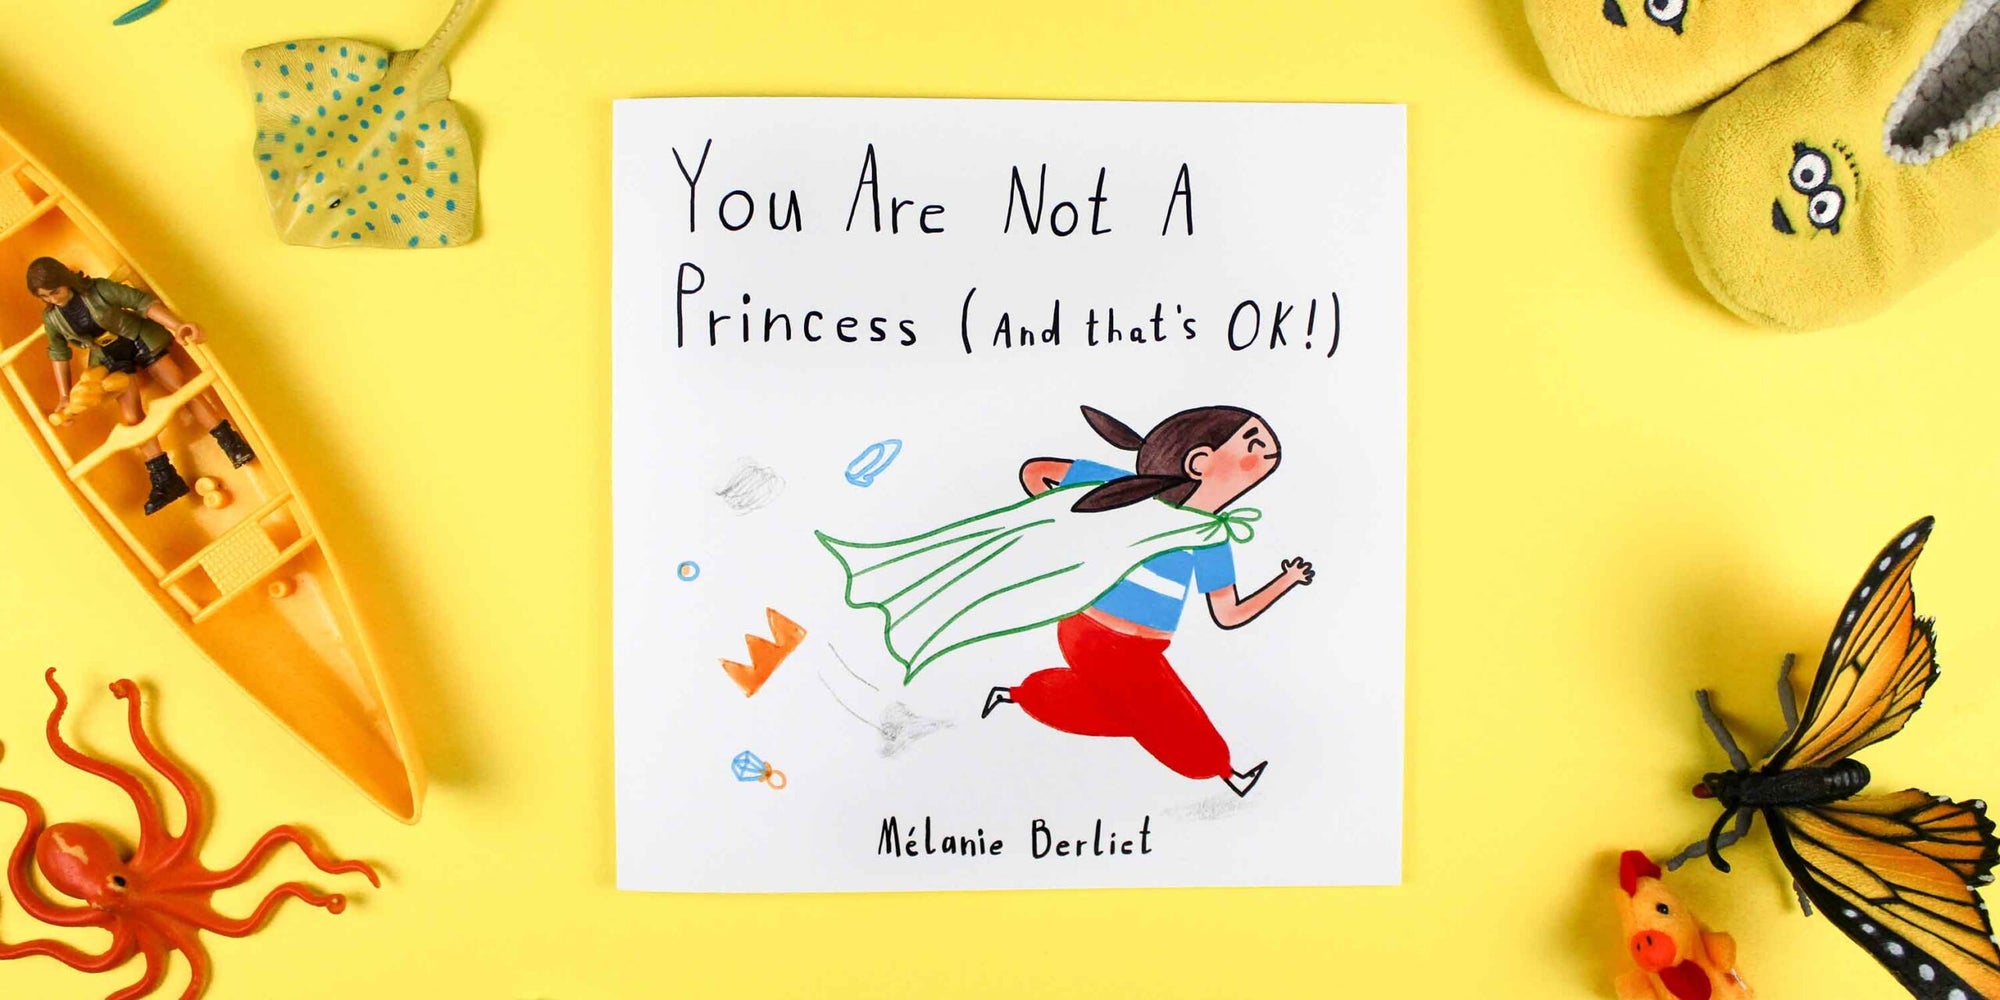 Du bist keine Prinzessin – und das ist auch gut so